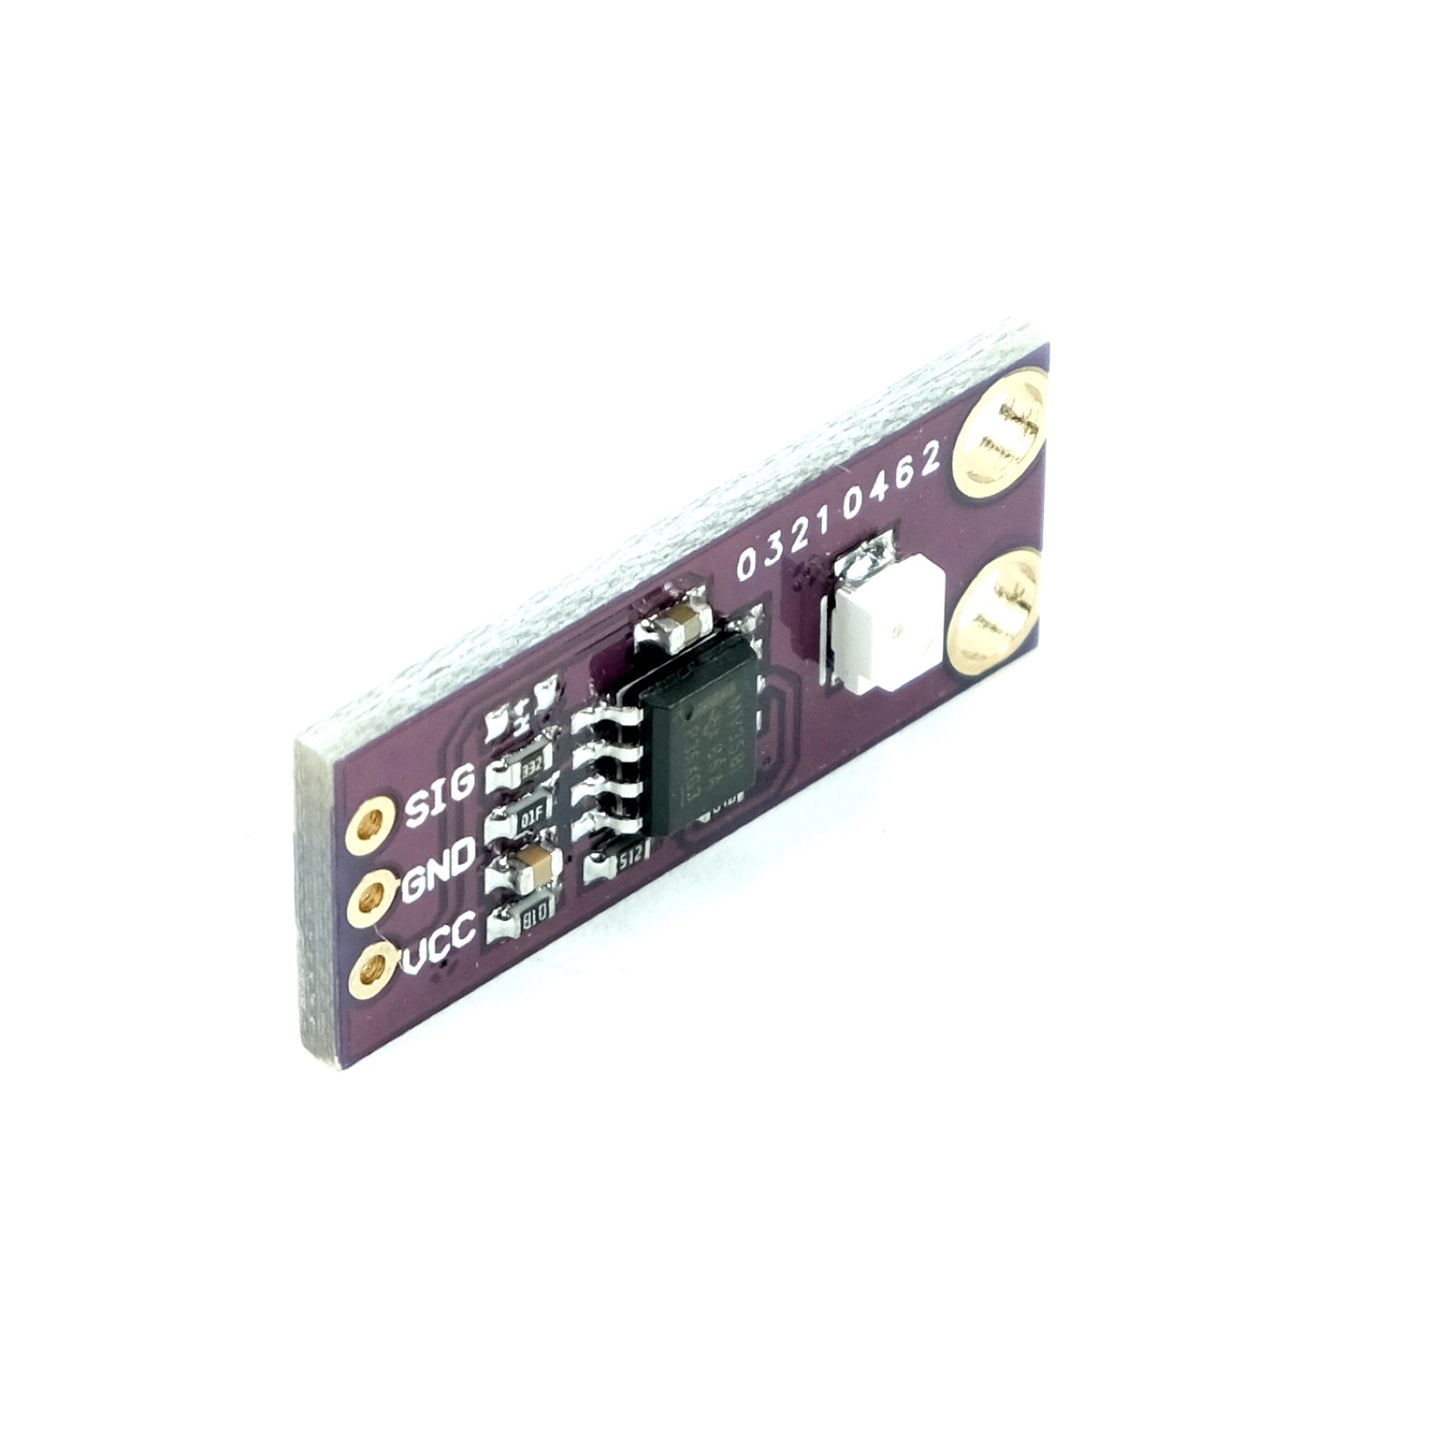 UV Lichtsensor GUVA-S12SD mit analogem Ausgang, 3-5V, 240-370nm